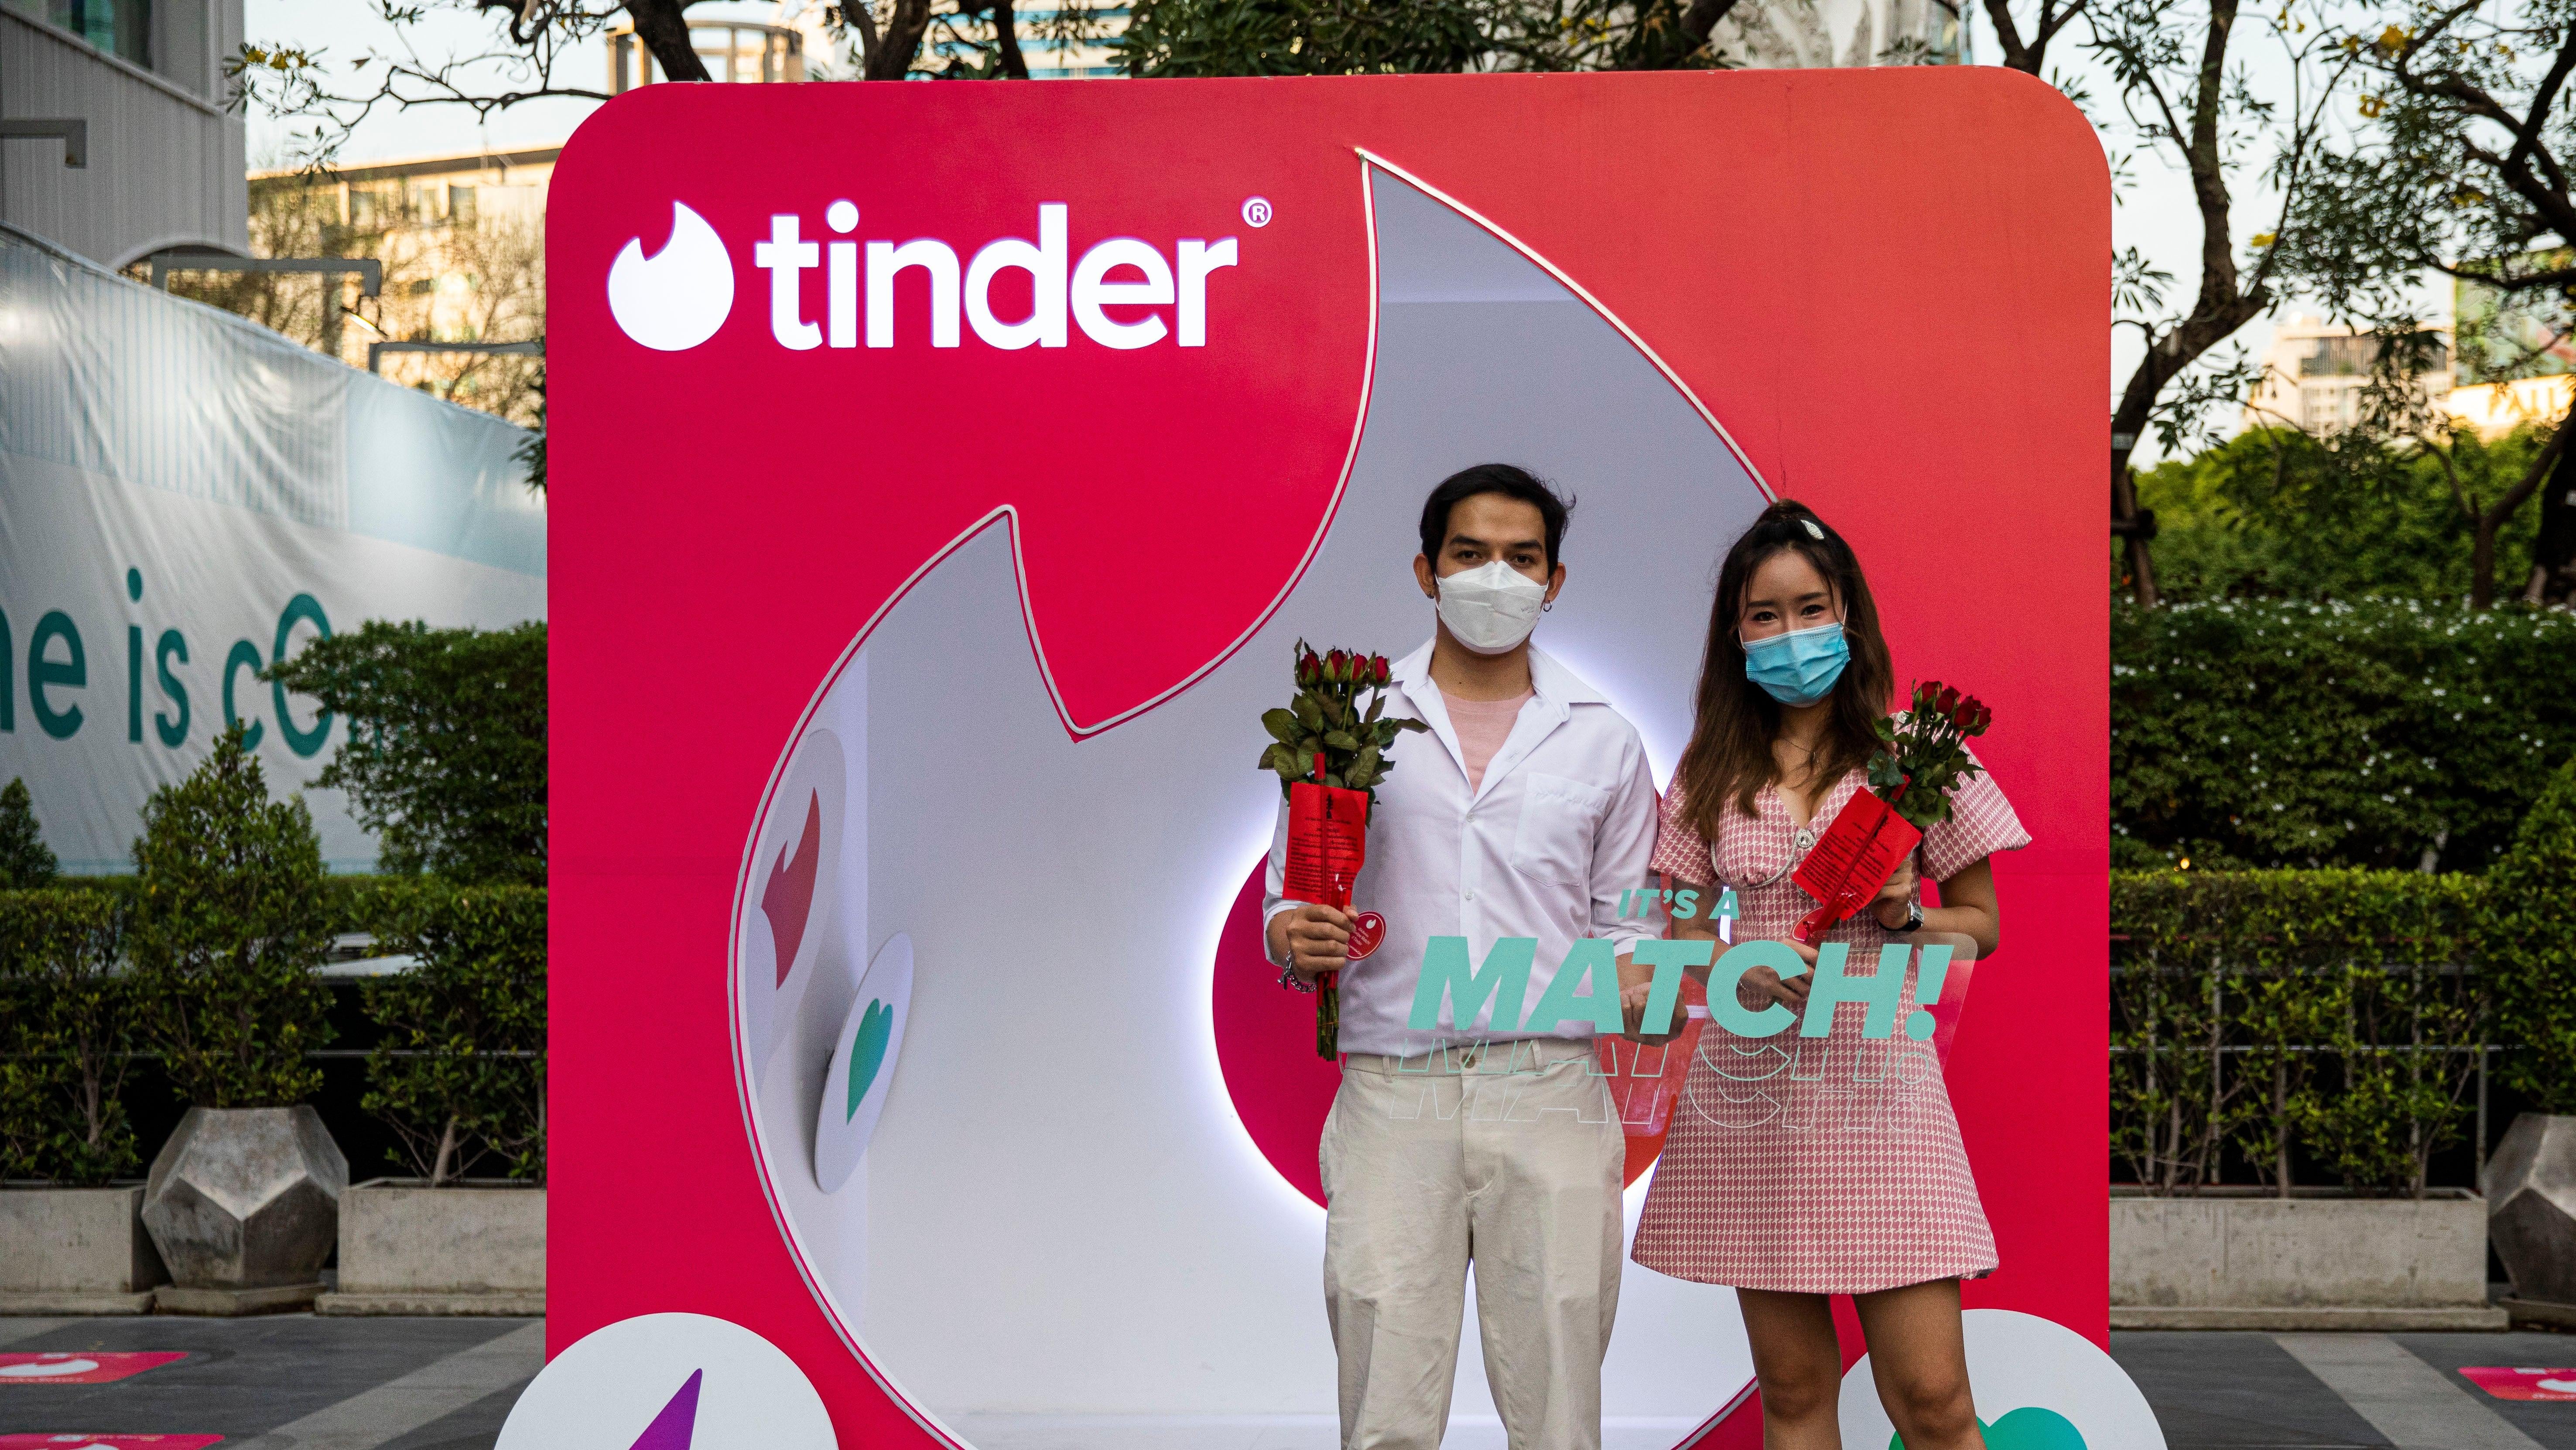 زوجان تايلانديان يقفان في كشك Tinder في يوم عيد الحب في 14 فبراير 2022 في بانكوك ، تايلاند.  الشعب التايلاندي يشارك في مراسم الصلاة برعاية Tinder في ضريح تريمورتي ، الملقب بـ "مرقد الحب"، في يوم عيد الحب. 